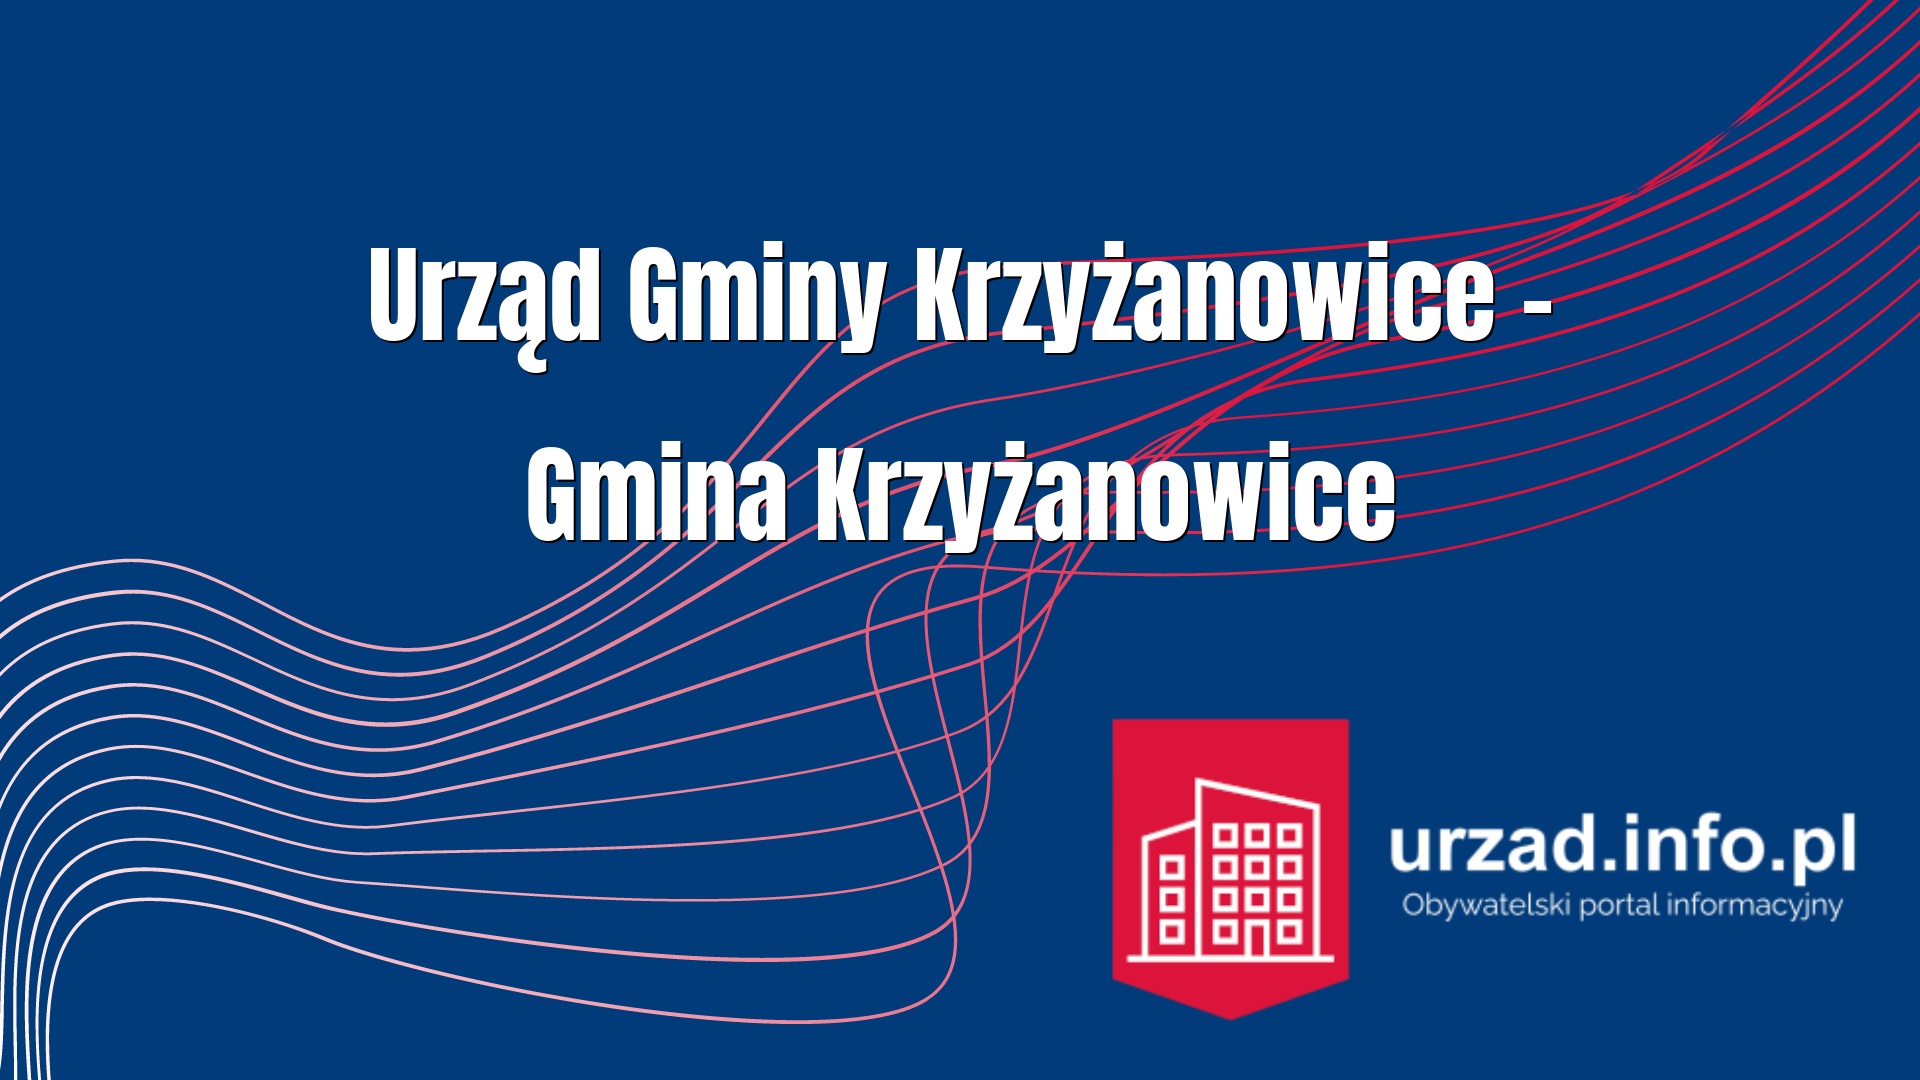 Urząd Gminy Krzyżanowice – Gmina Krzyżanowice